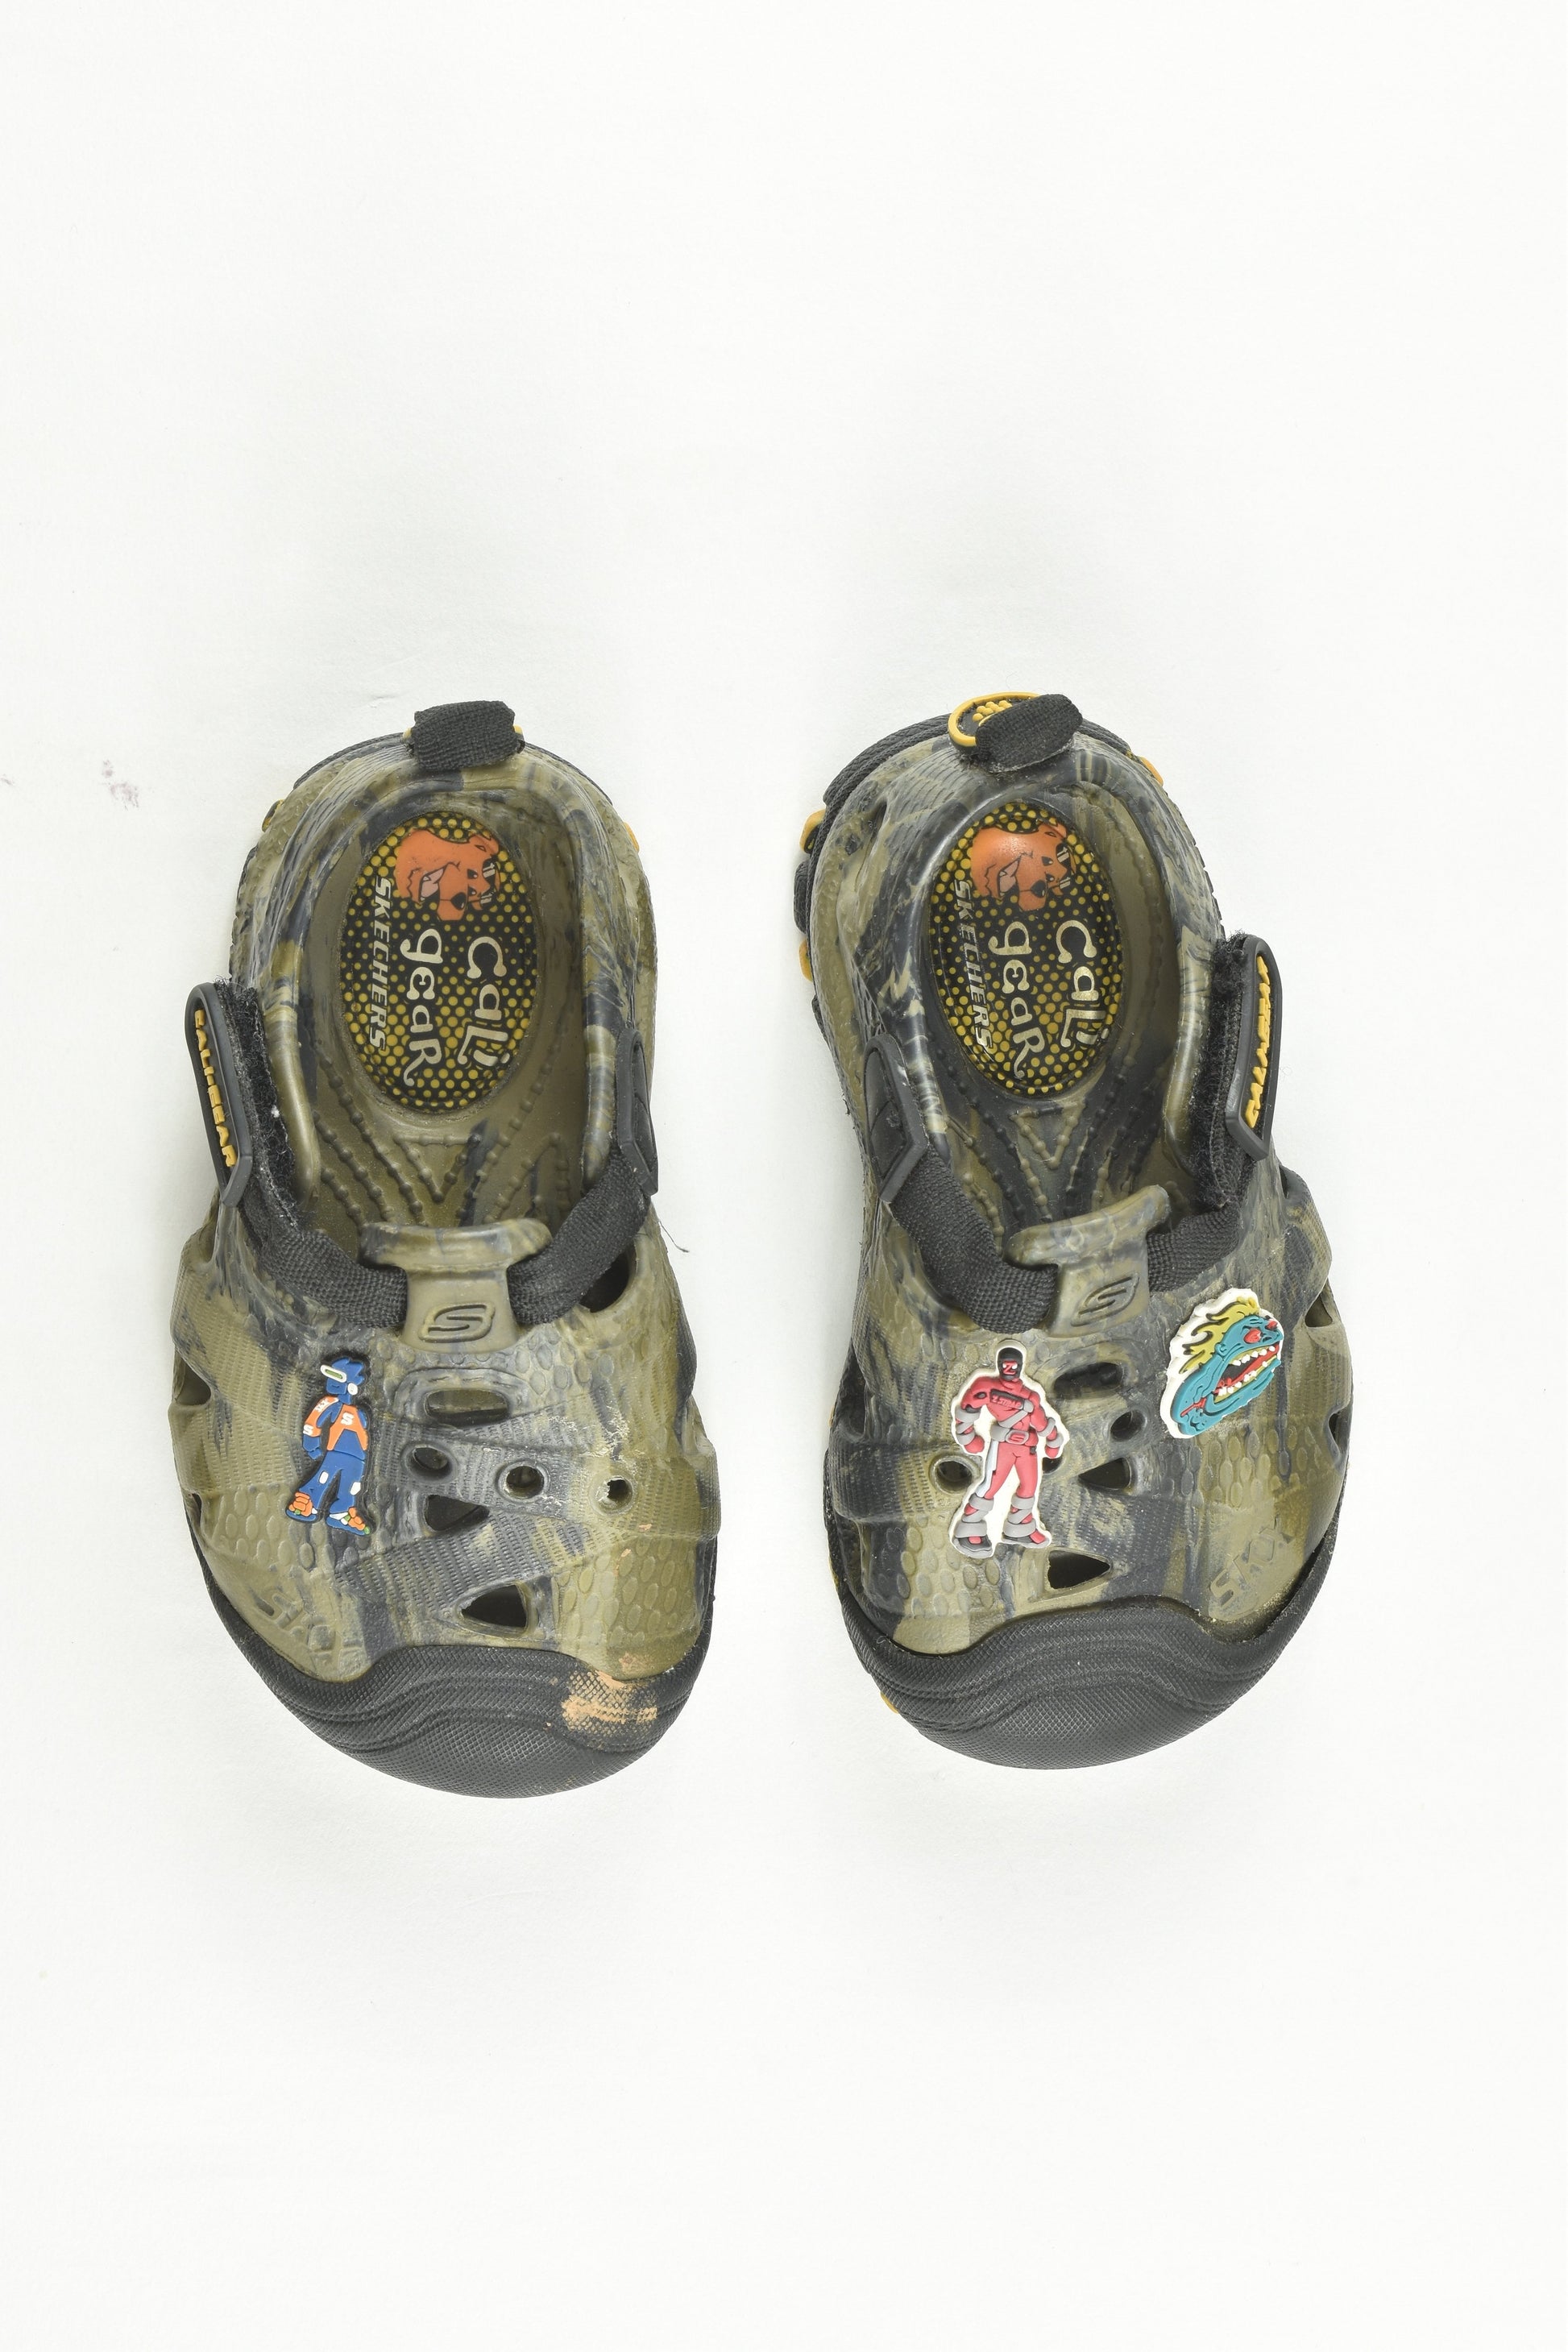 Skechers Size 5 Cali Gear Shoes